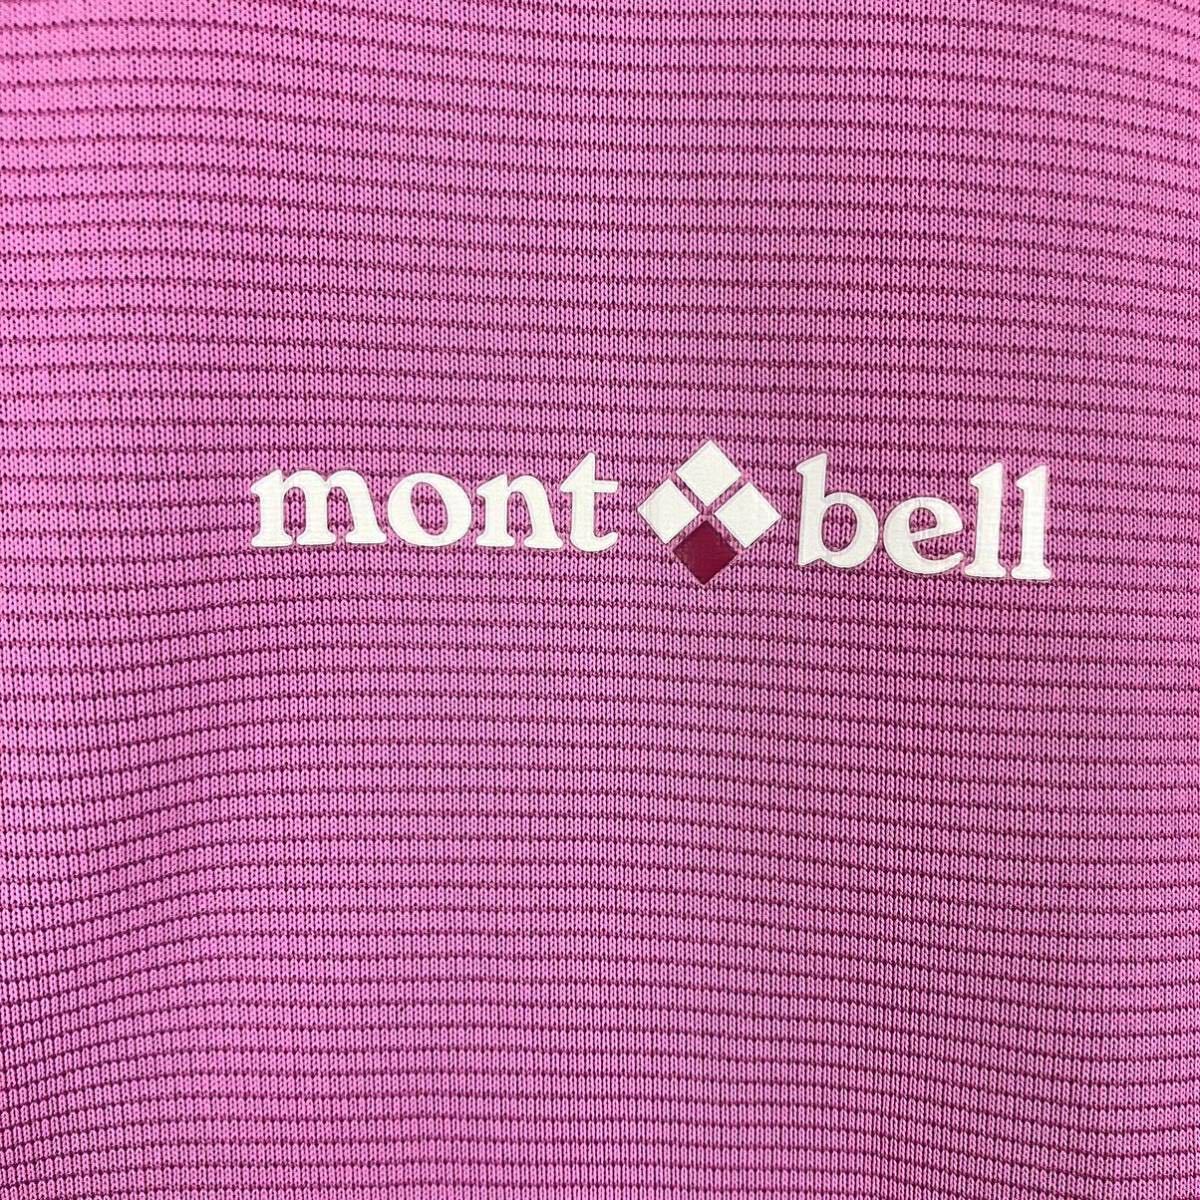 mont-bell モンベル 長袖 Tシャツ レディース 紫 パープル カジュアル スポーツ トレーニング アウトドア キャンプ ハーフジップ ウェア